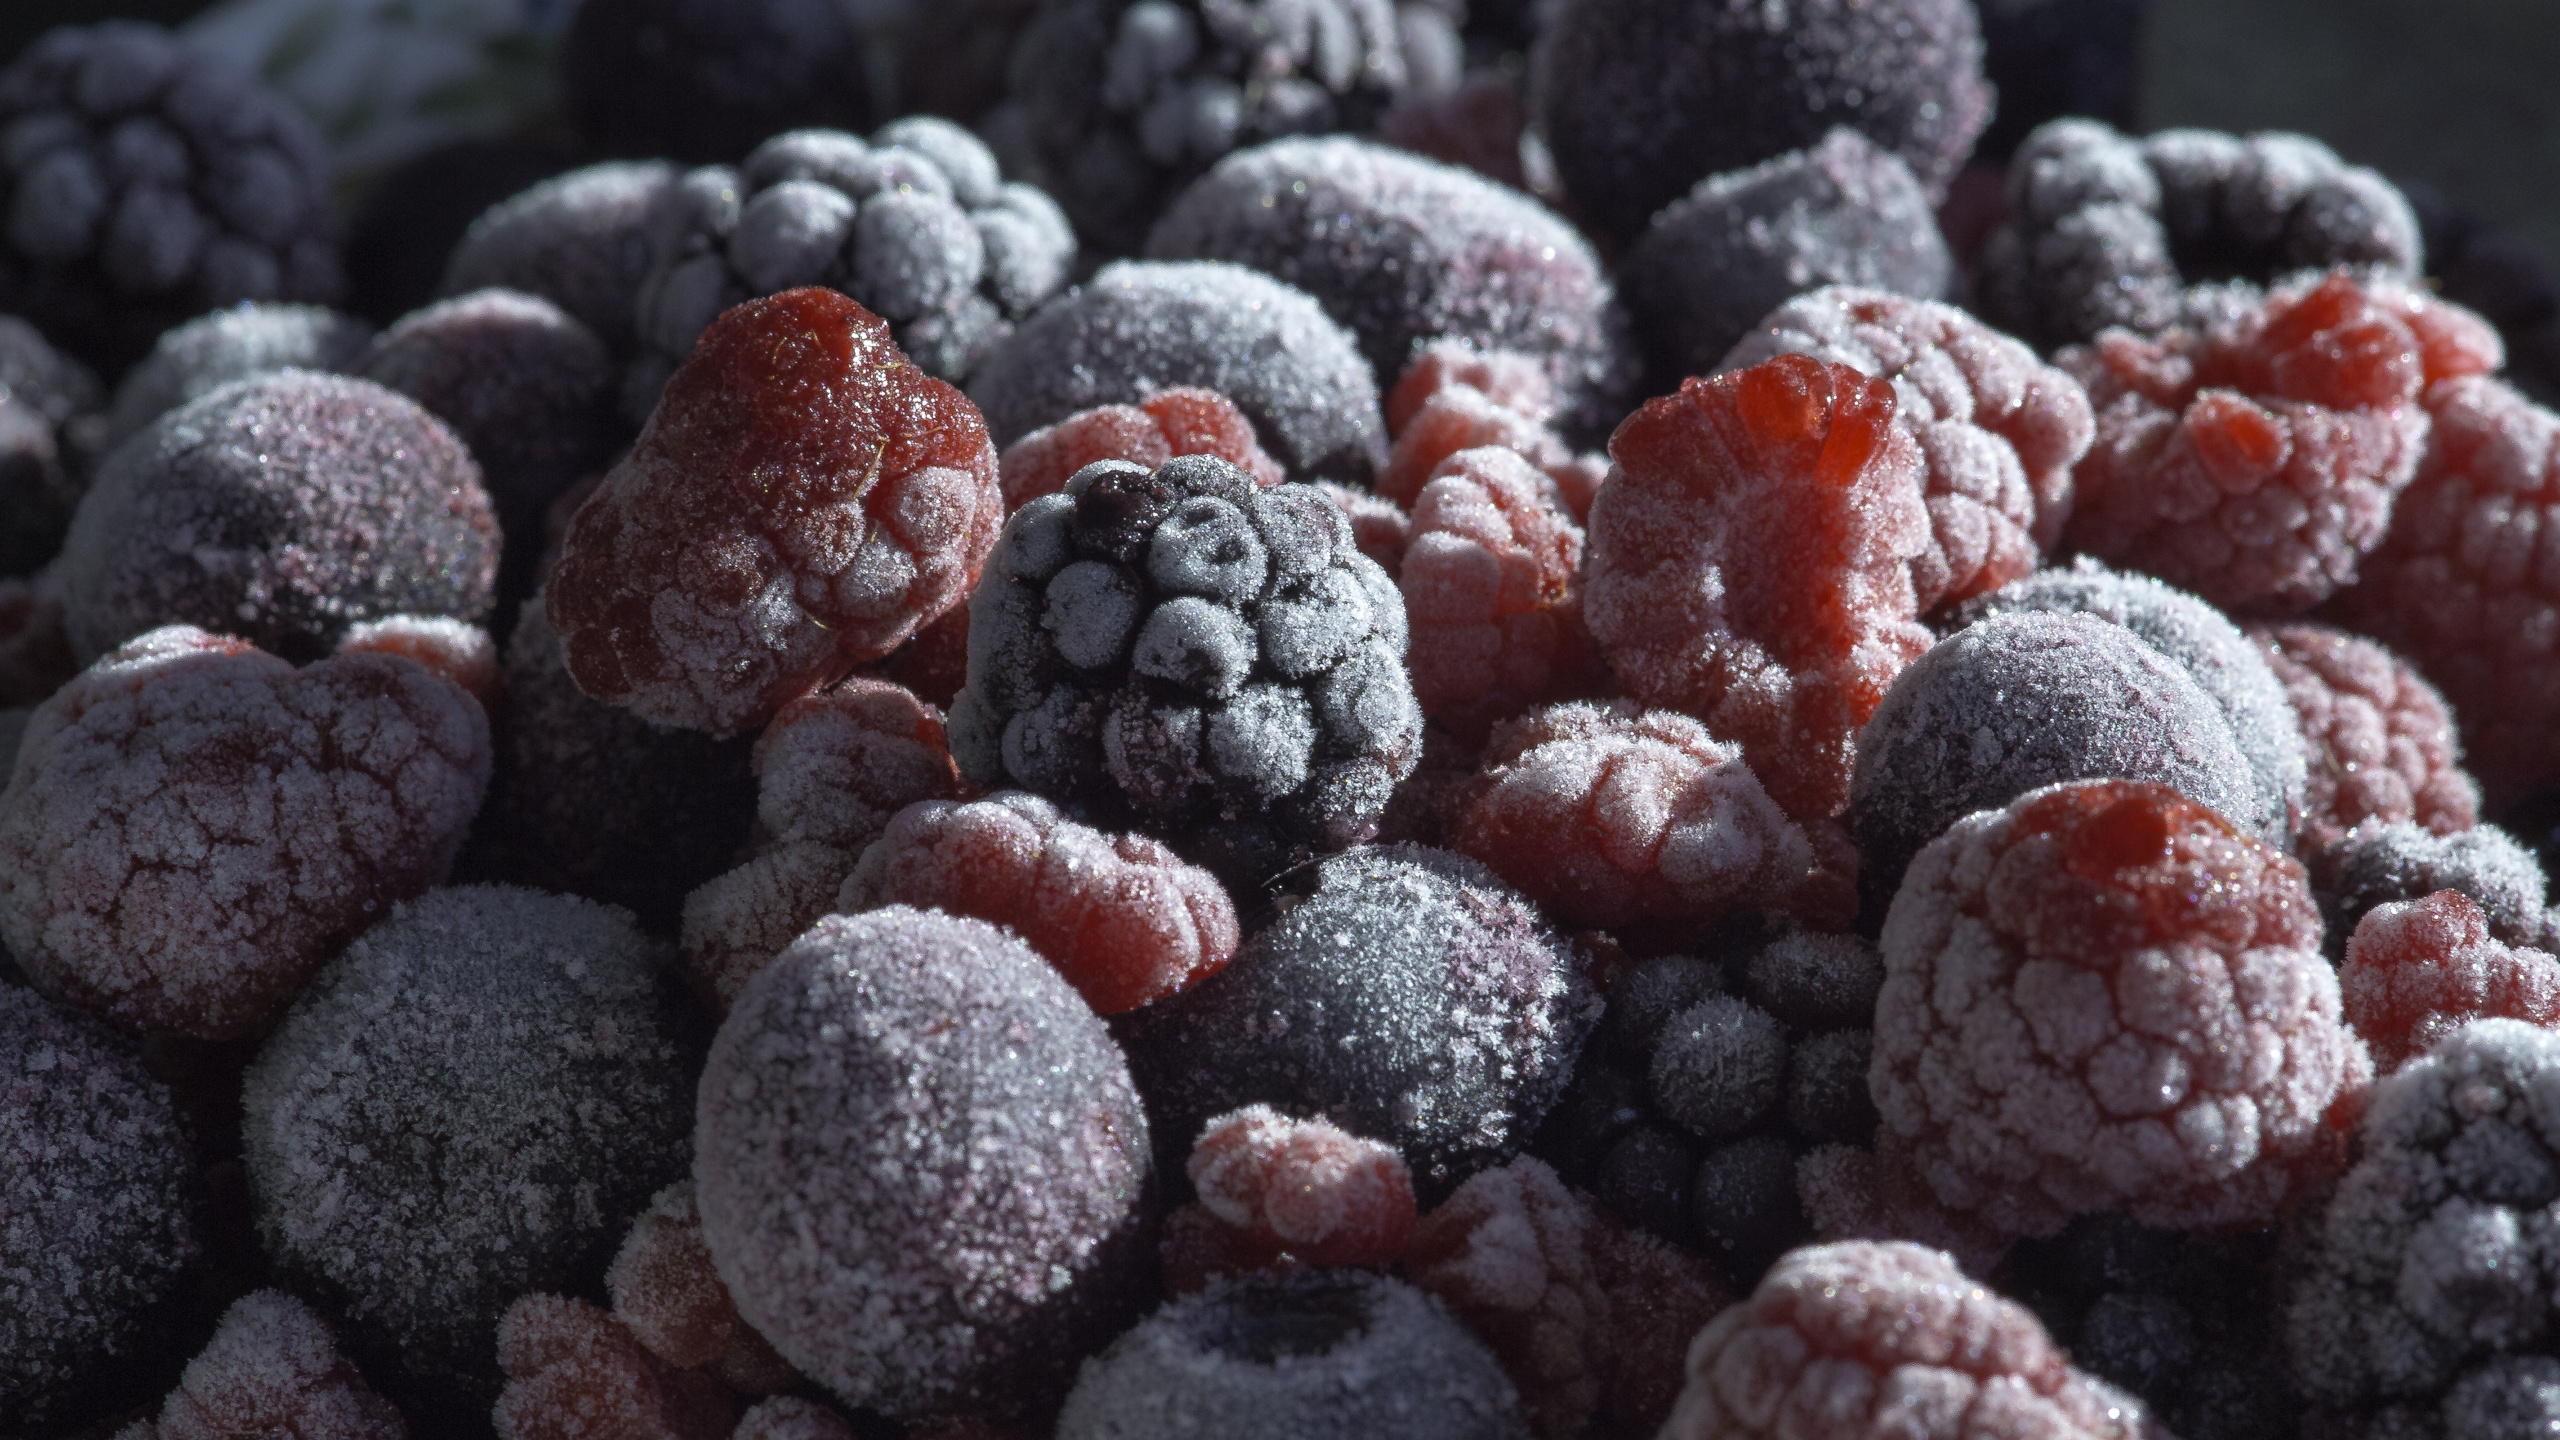 蓝莓, 树莓, 食品, 天然的食物, 甜头 壁纸 2560x1440 允许